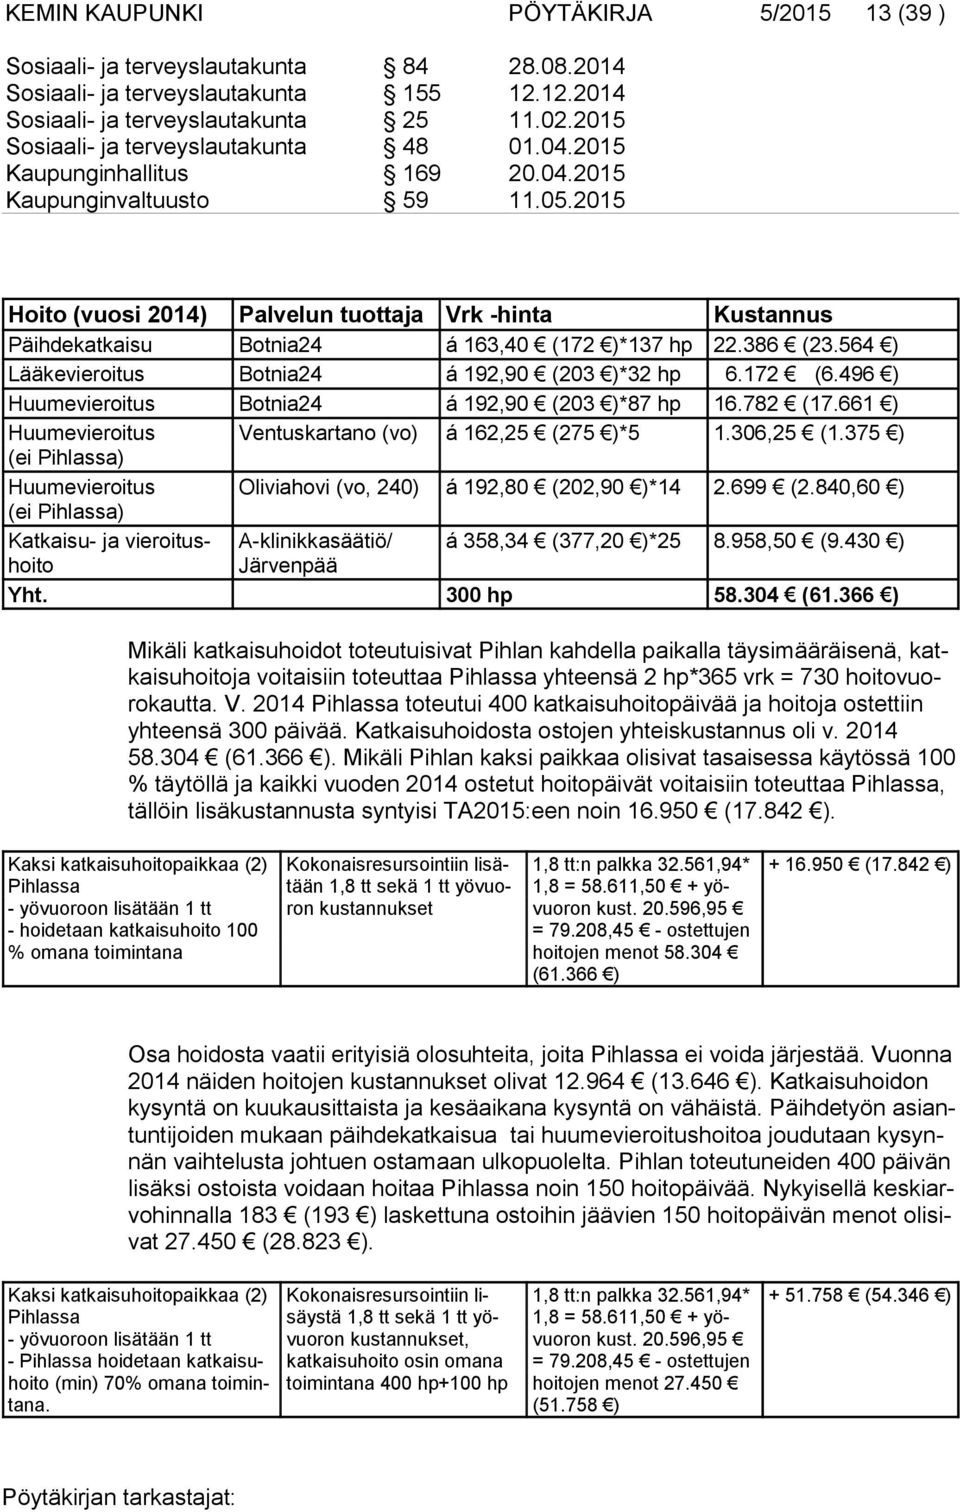 2015 Hoito (vuosi 2014) Palvelun tuottaja Vrk -hinta Kustannus Päihdekatkaisu Botnia24 á 163,40 (172 )*137 hp 22.386 (23.564 ) Lääkevieroitus Botnia24 á 192,90 (203 )*32 hp 6.172 (6.